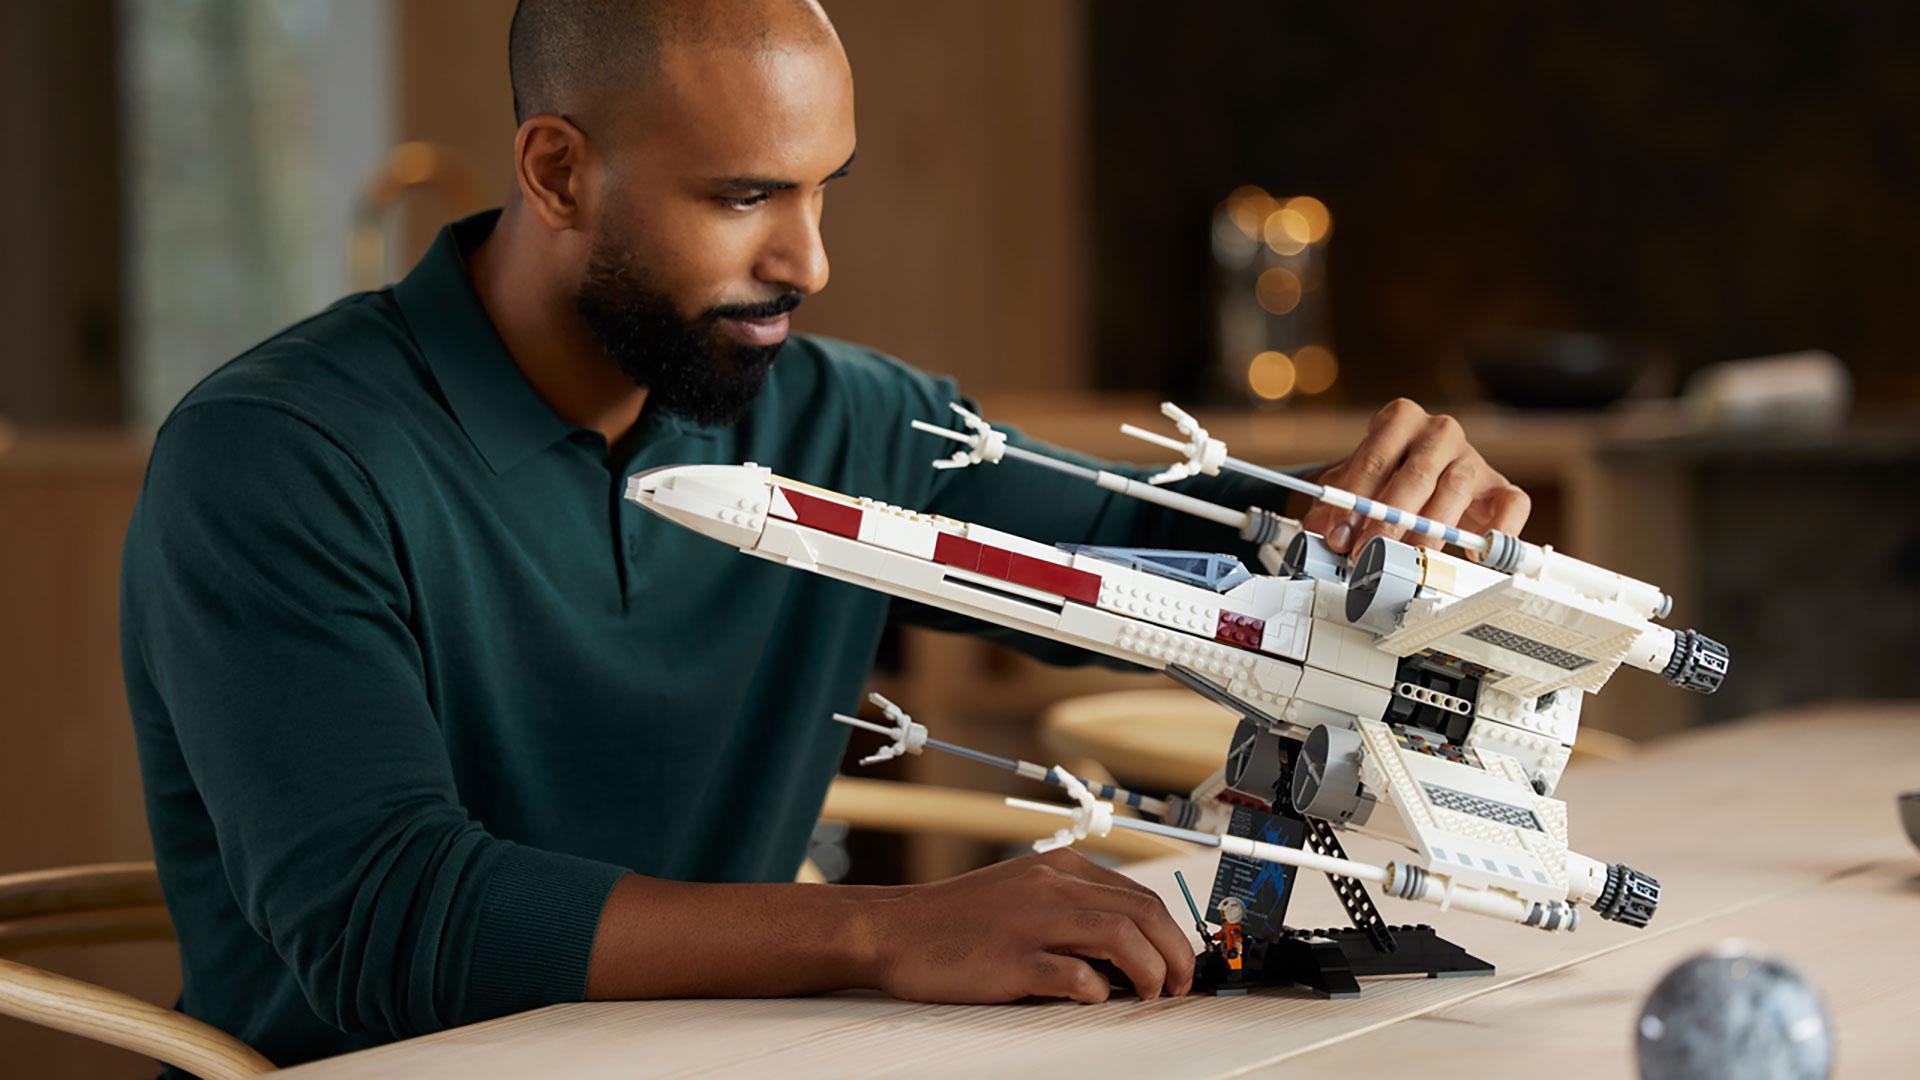 LEGO Star Wars UCS X-Wing Starfighter